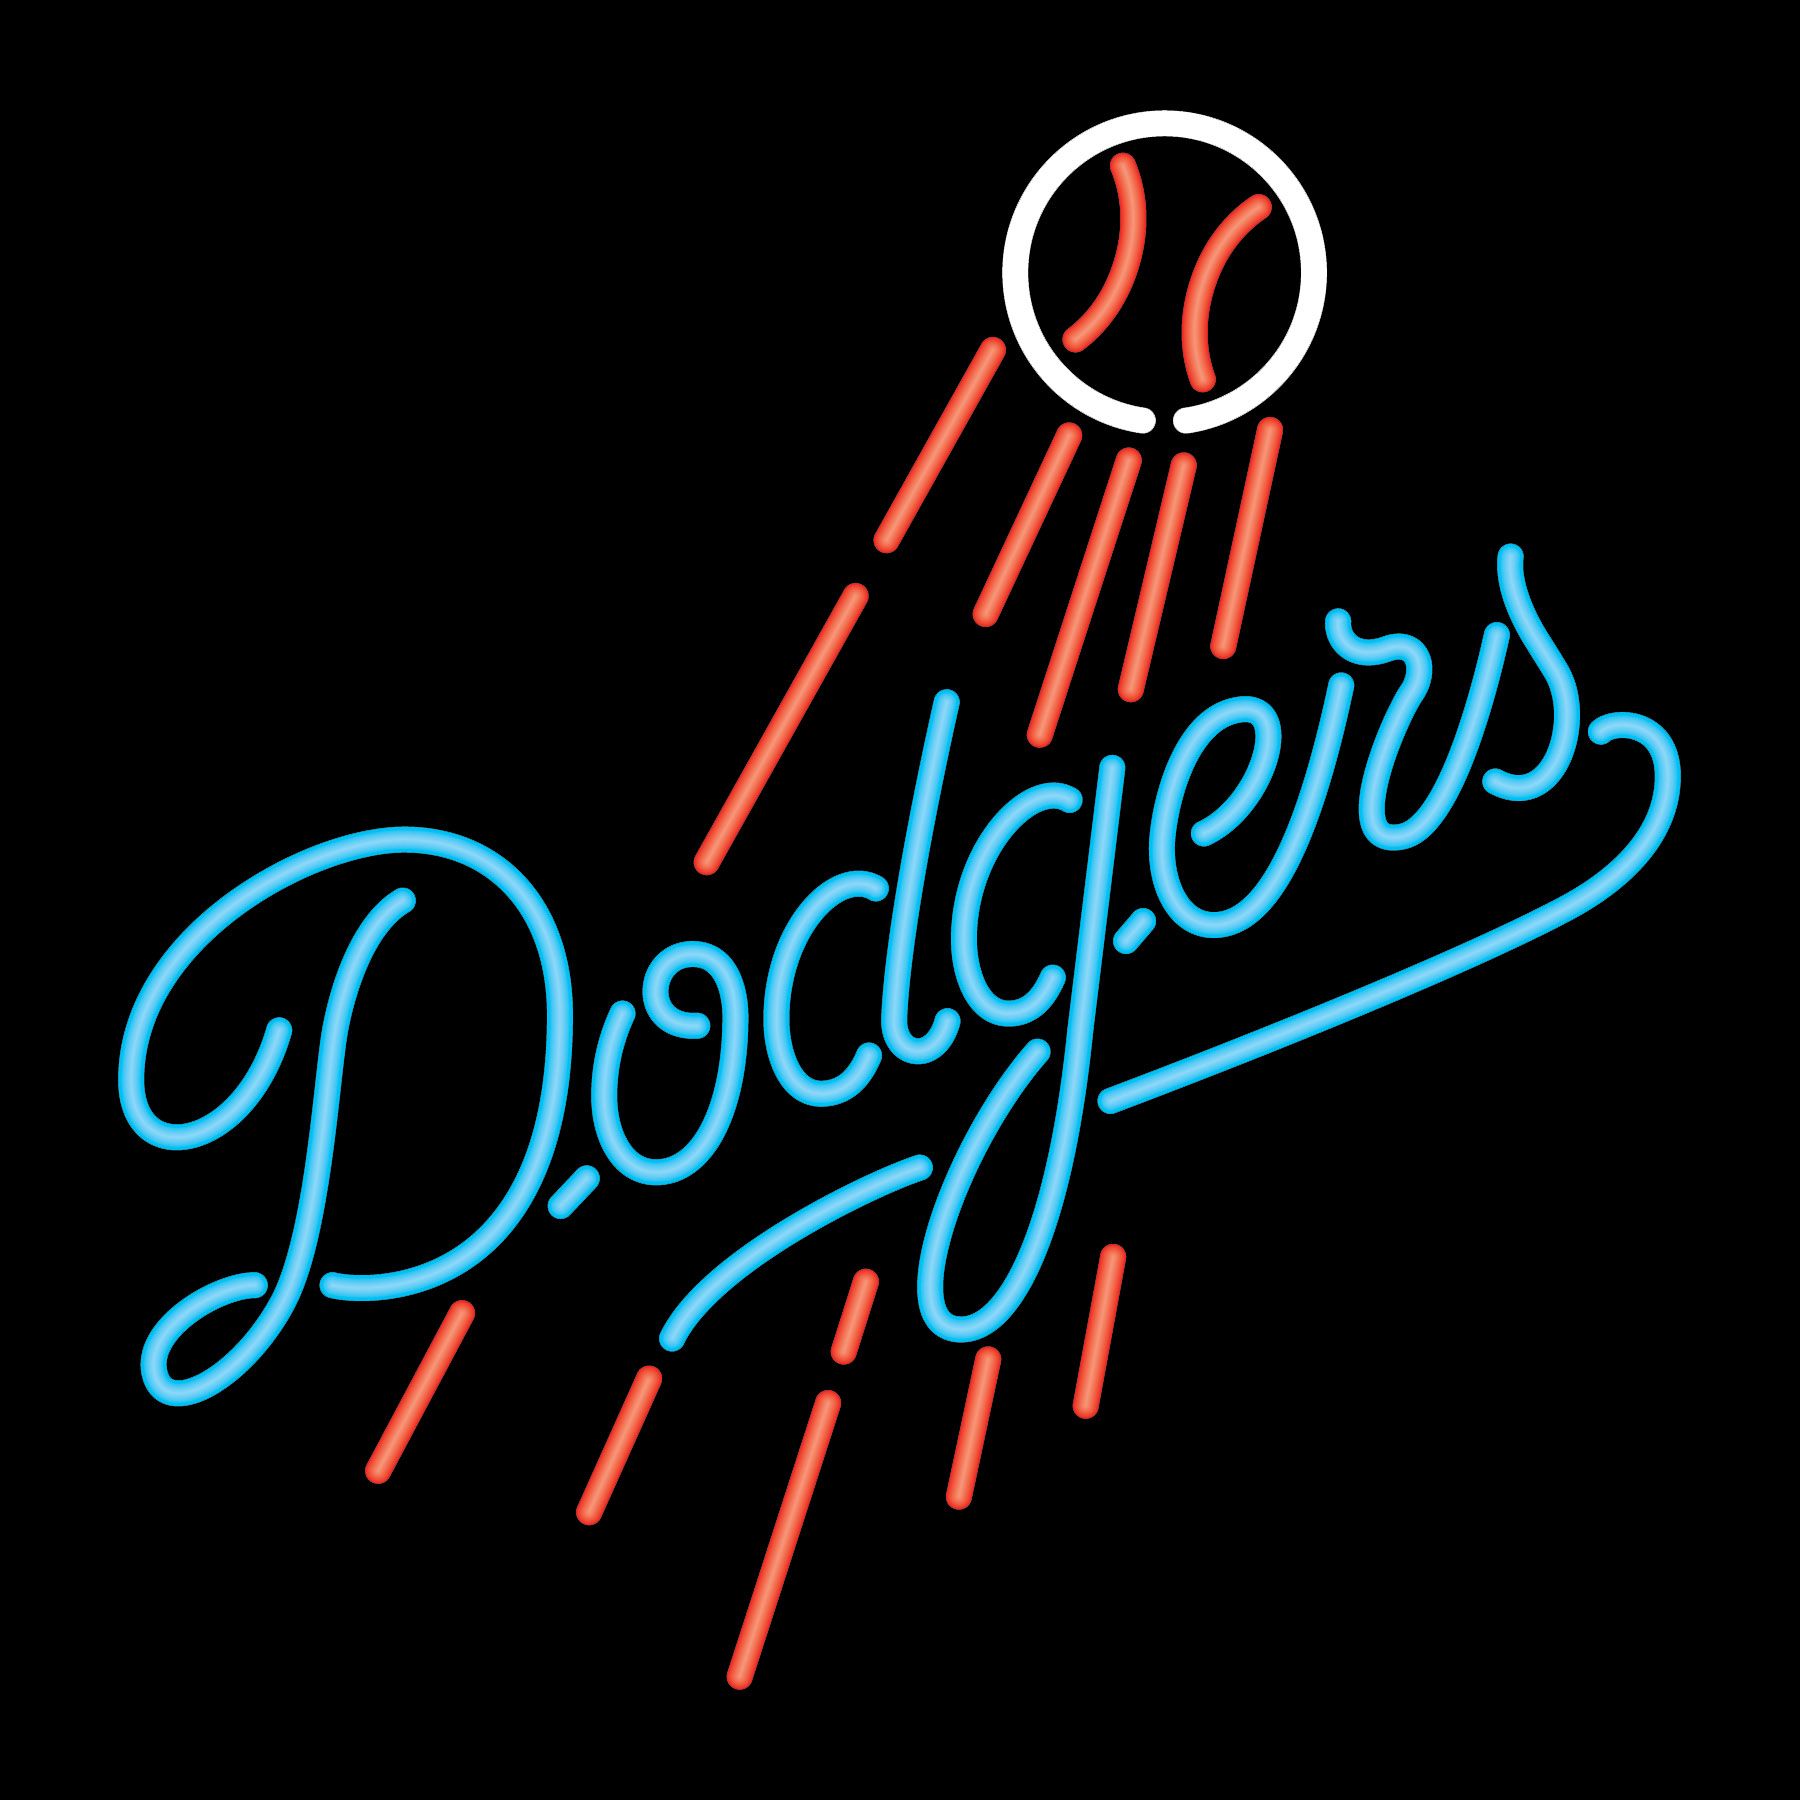 25+] Cool Dodgers Wallpaper - WallpaperSafari